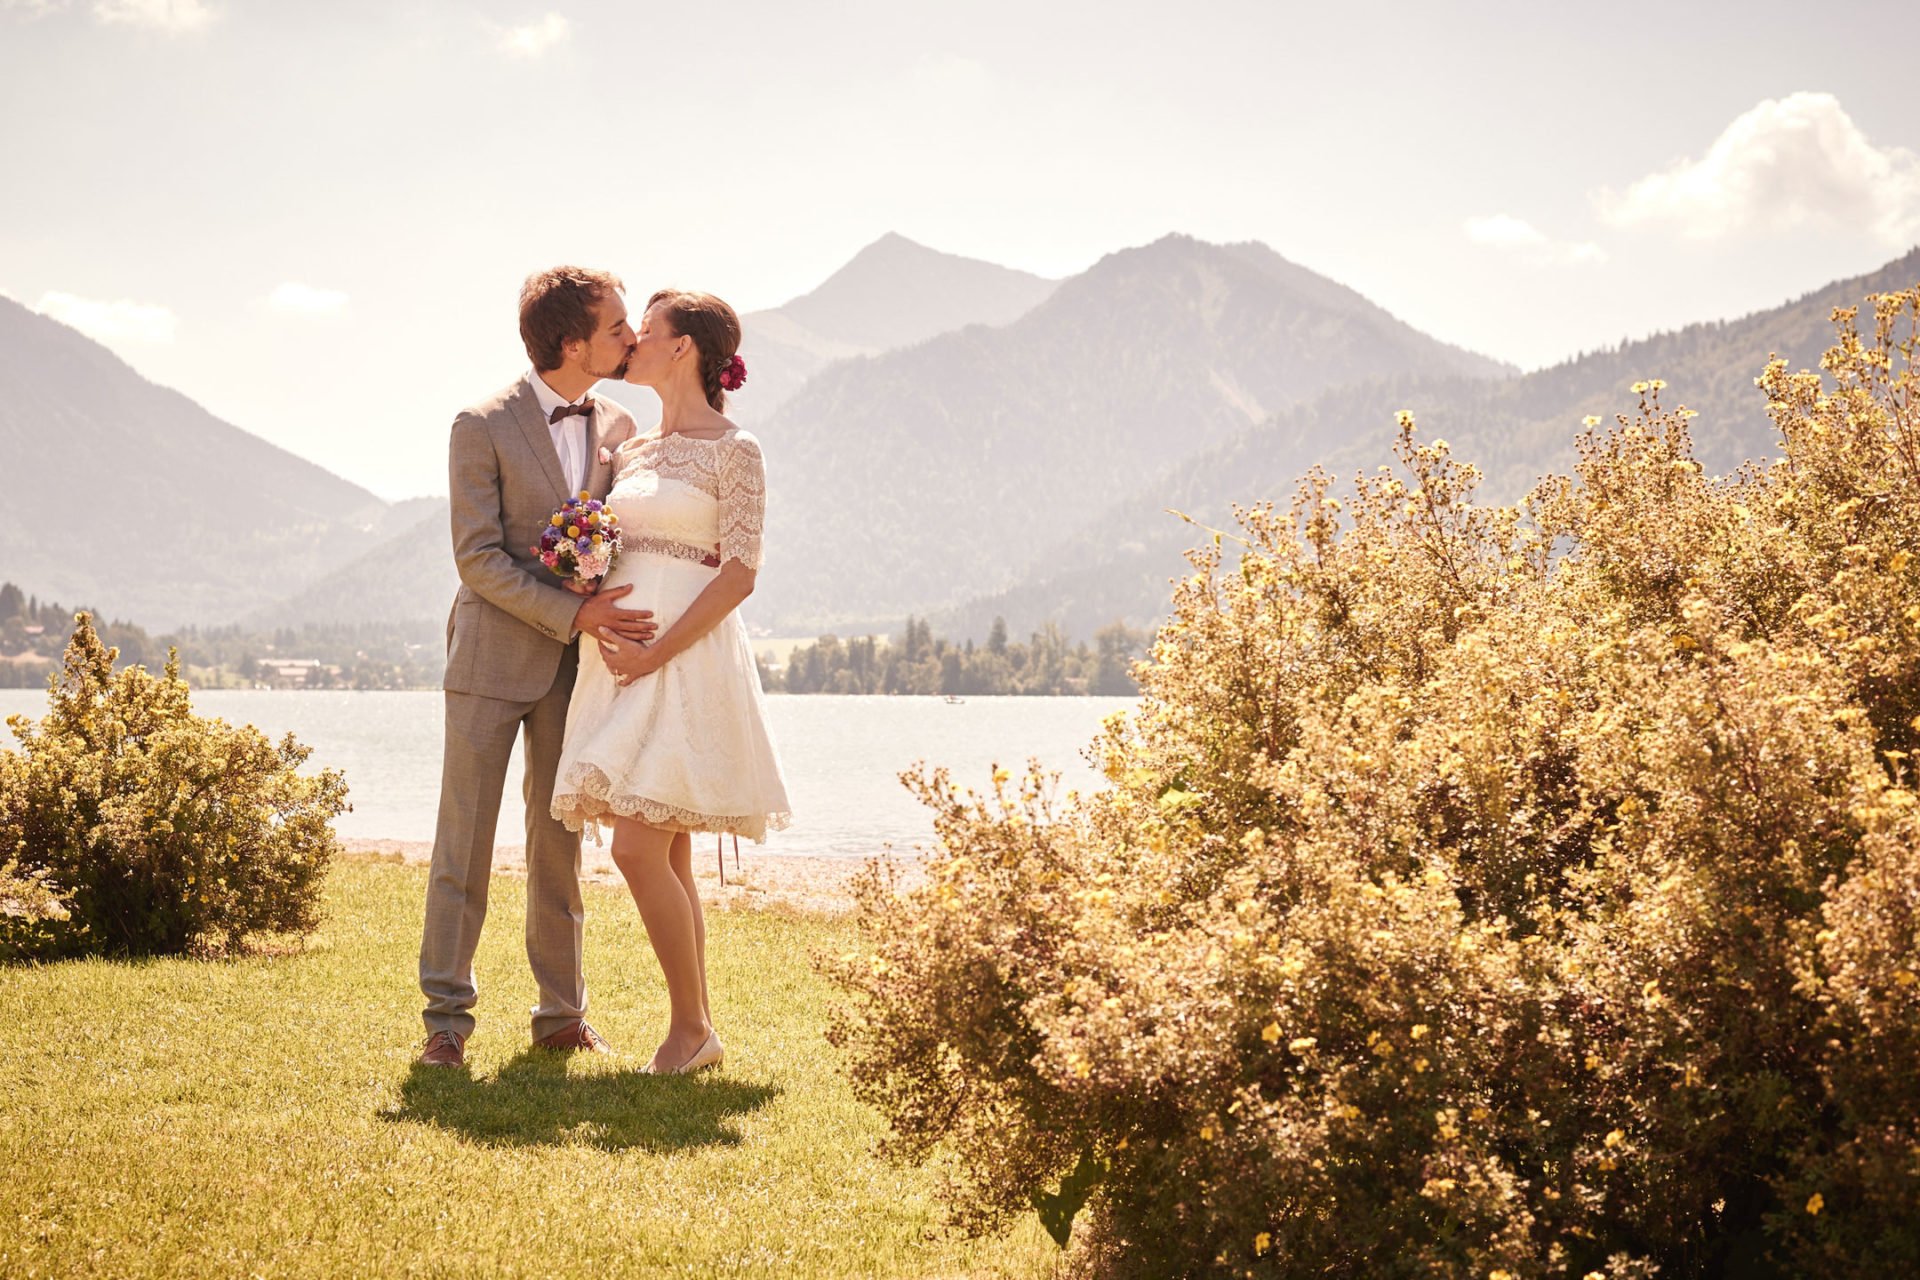 Umstandsbrautkleid kurz – schwangere Braut küsst ihren Mann im kurzen Brautkleid am See